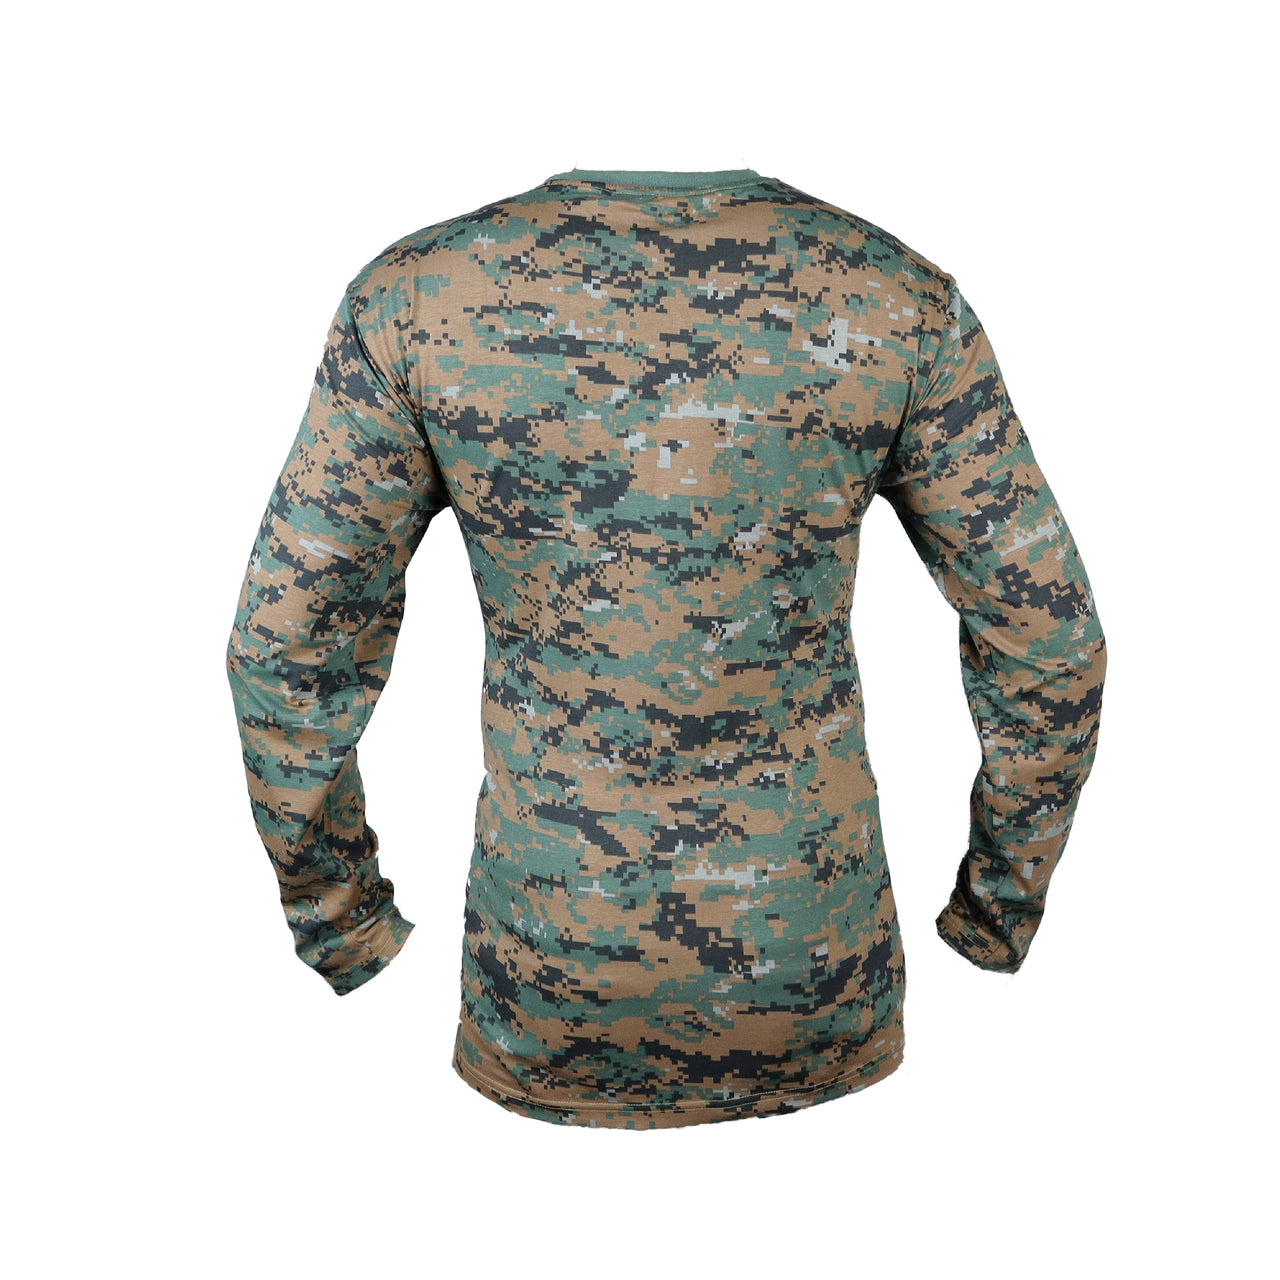 T-shirt-Woodland Digital Camouflage-Full Sleeve